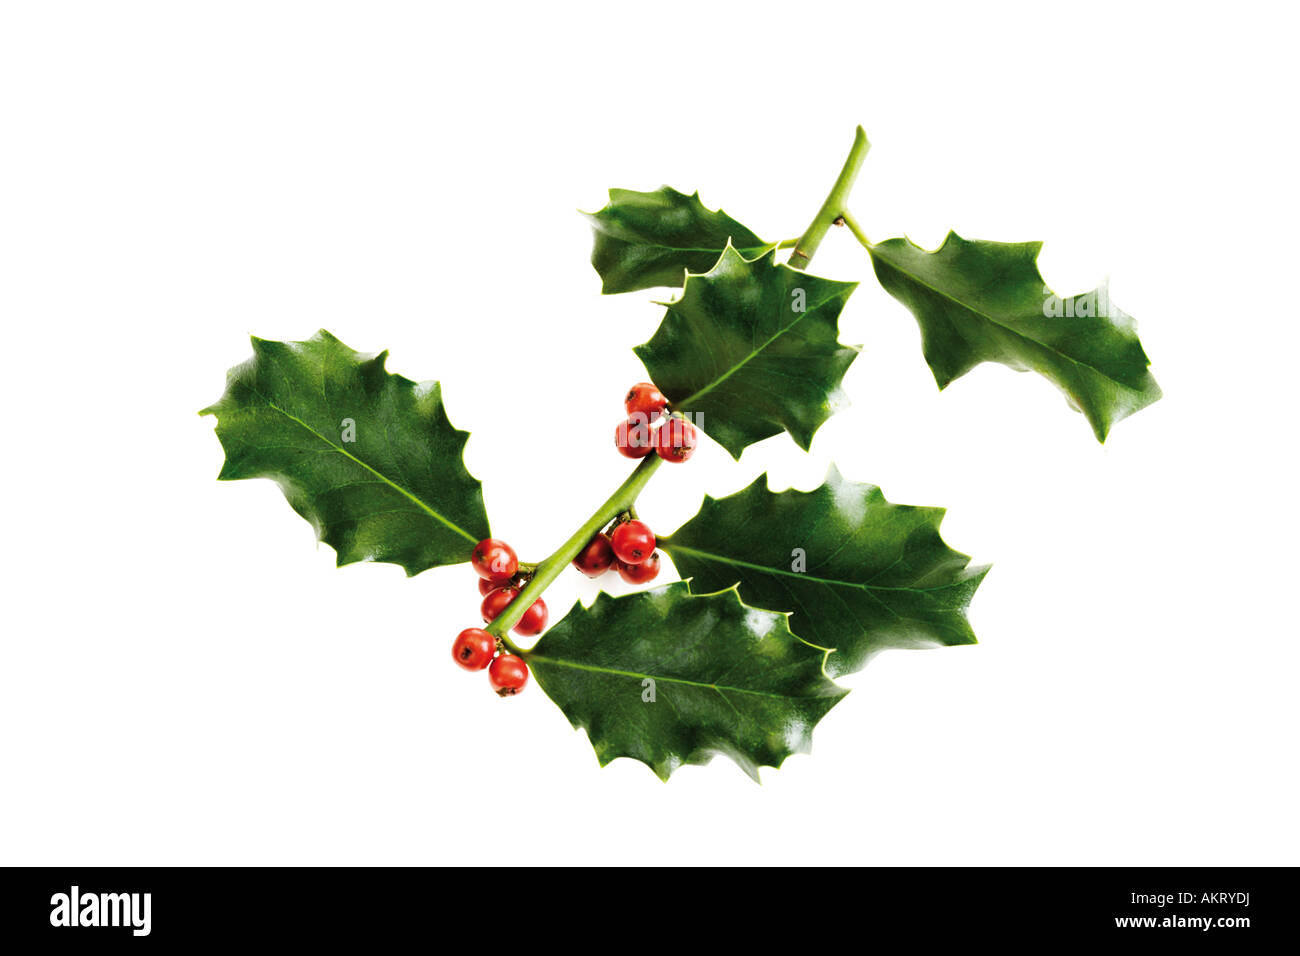 Holly twig (Ilex aquifolium), close-up Stock Photo